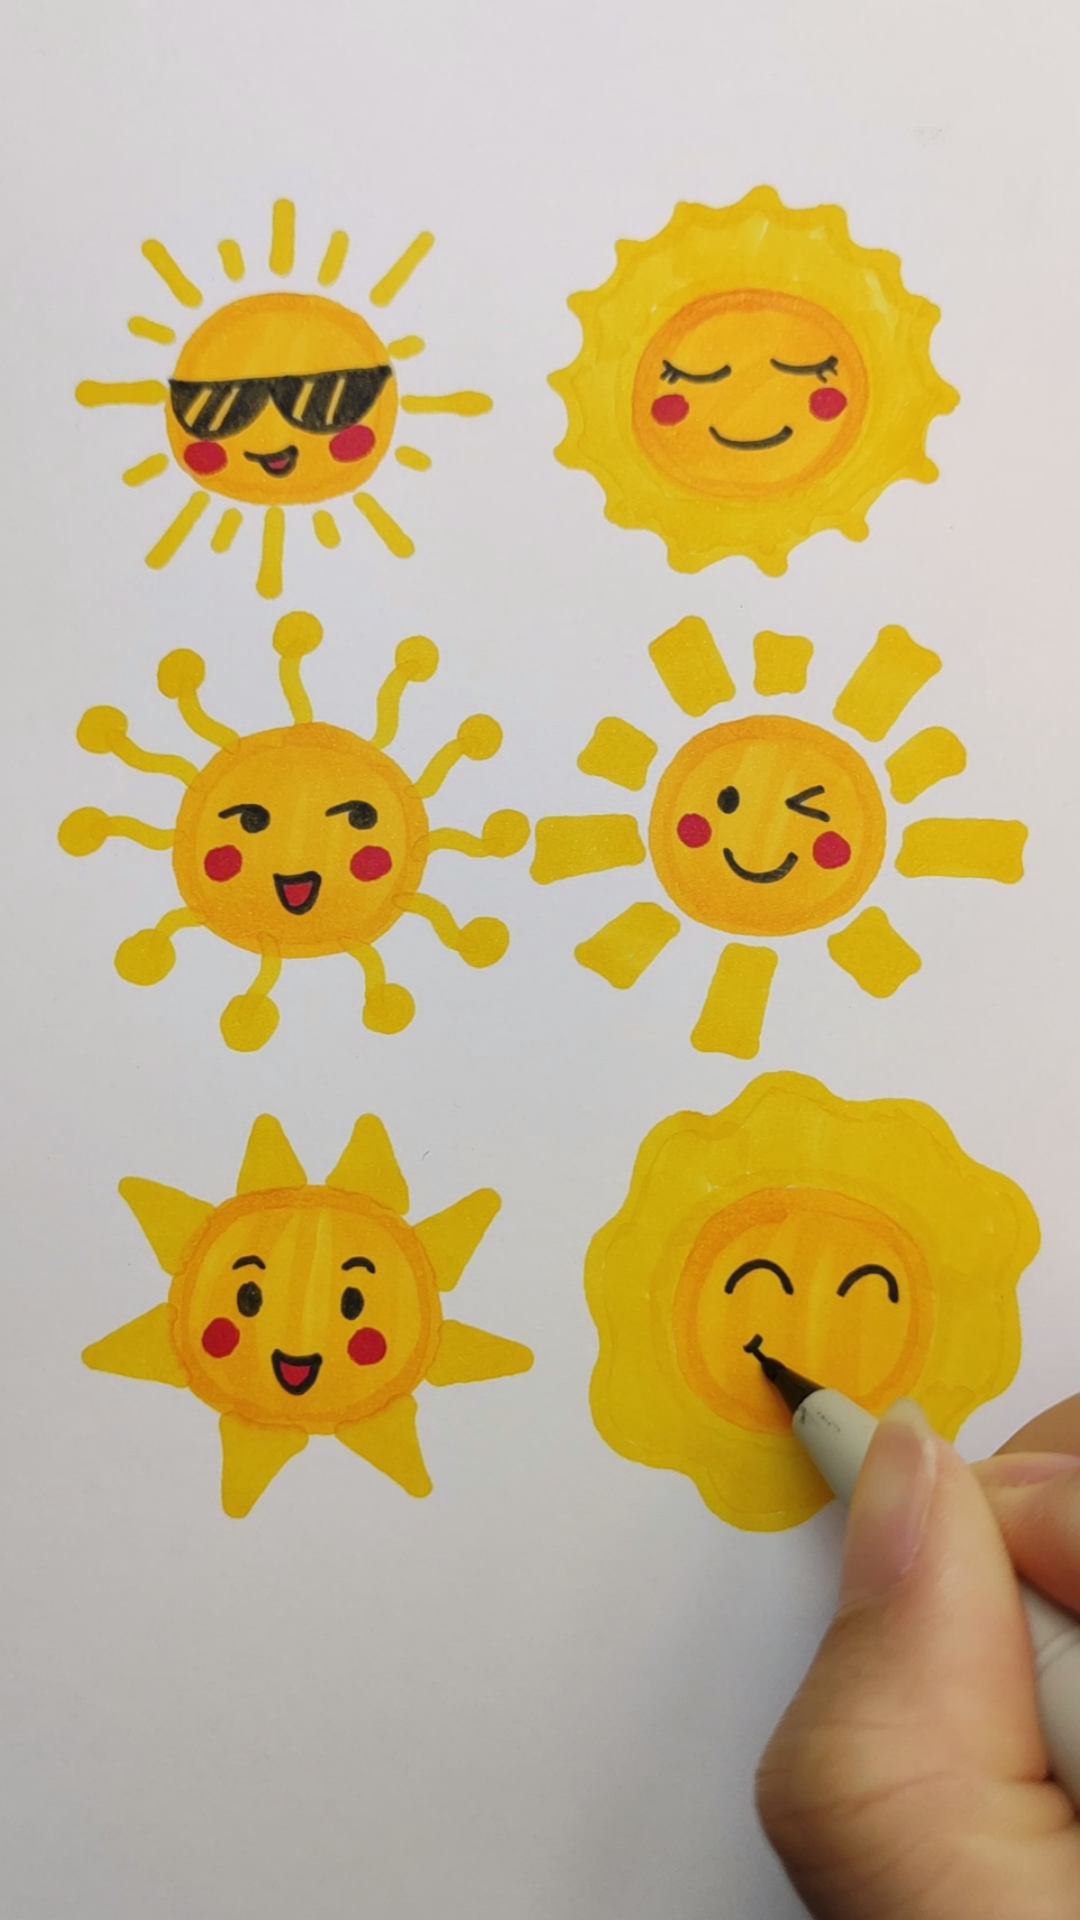 太阳的几种可爱画法,我喜欢最后一种,你喜欢哪一种?